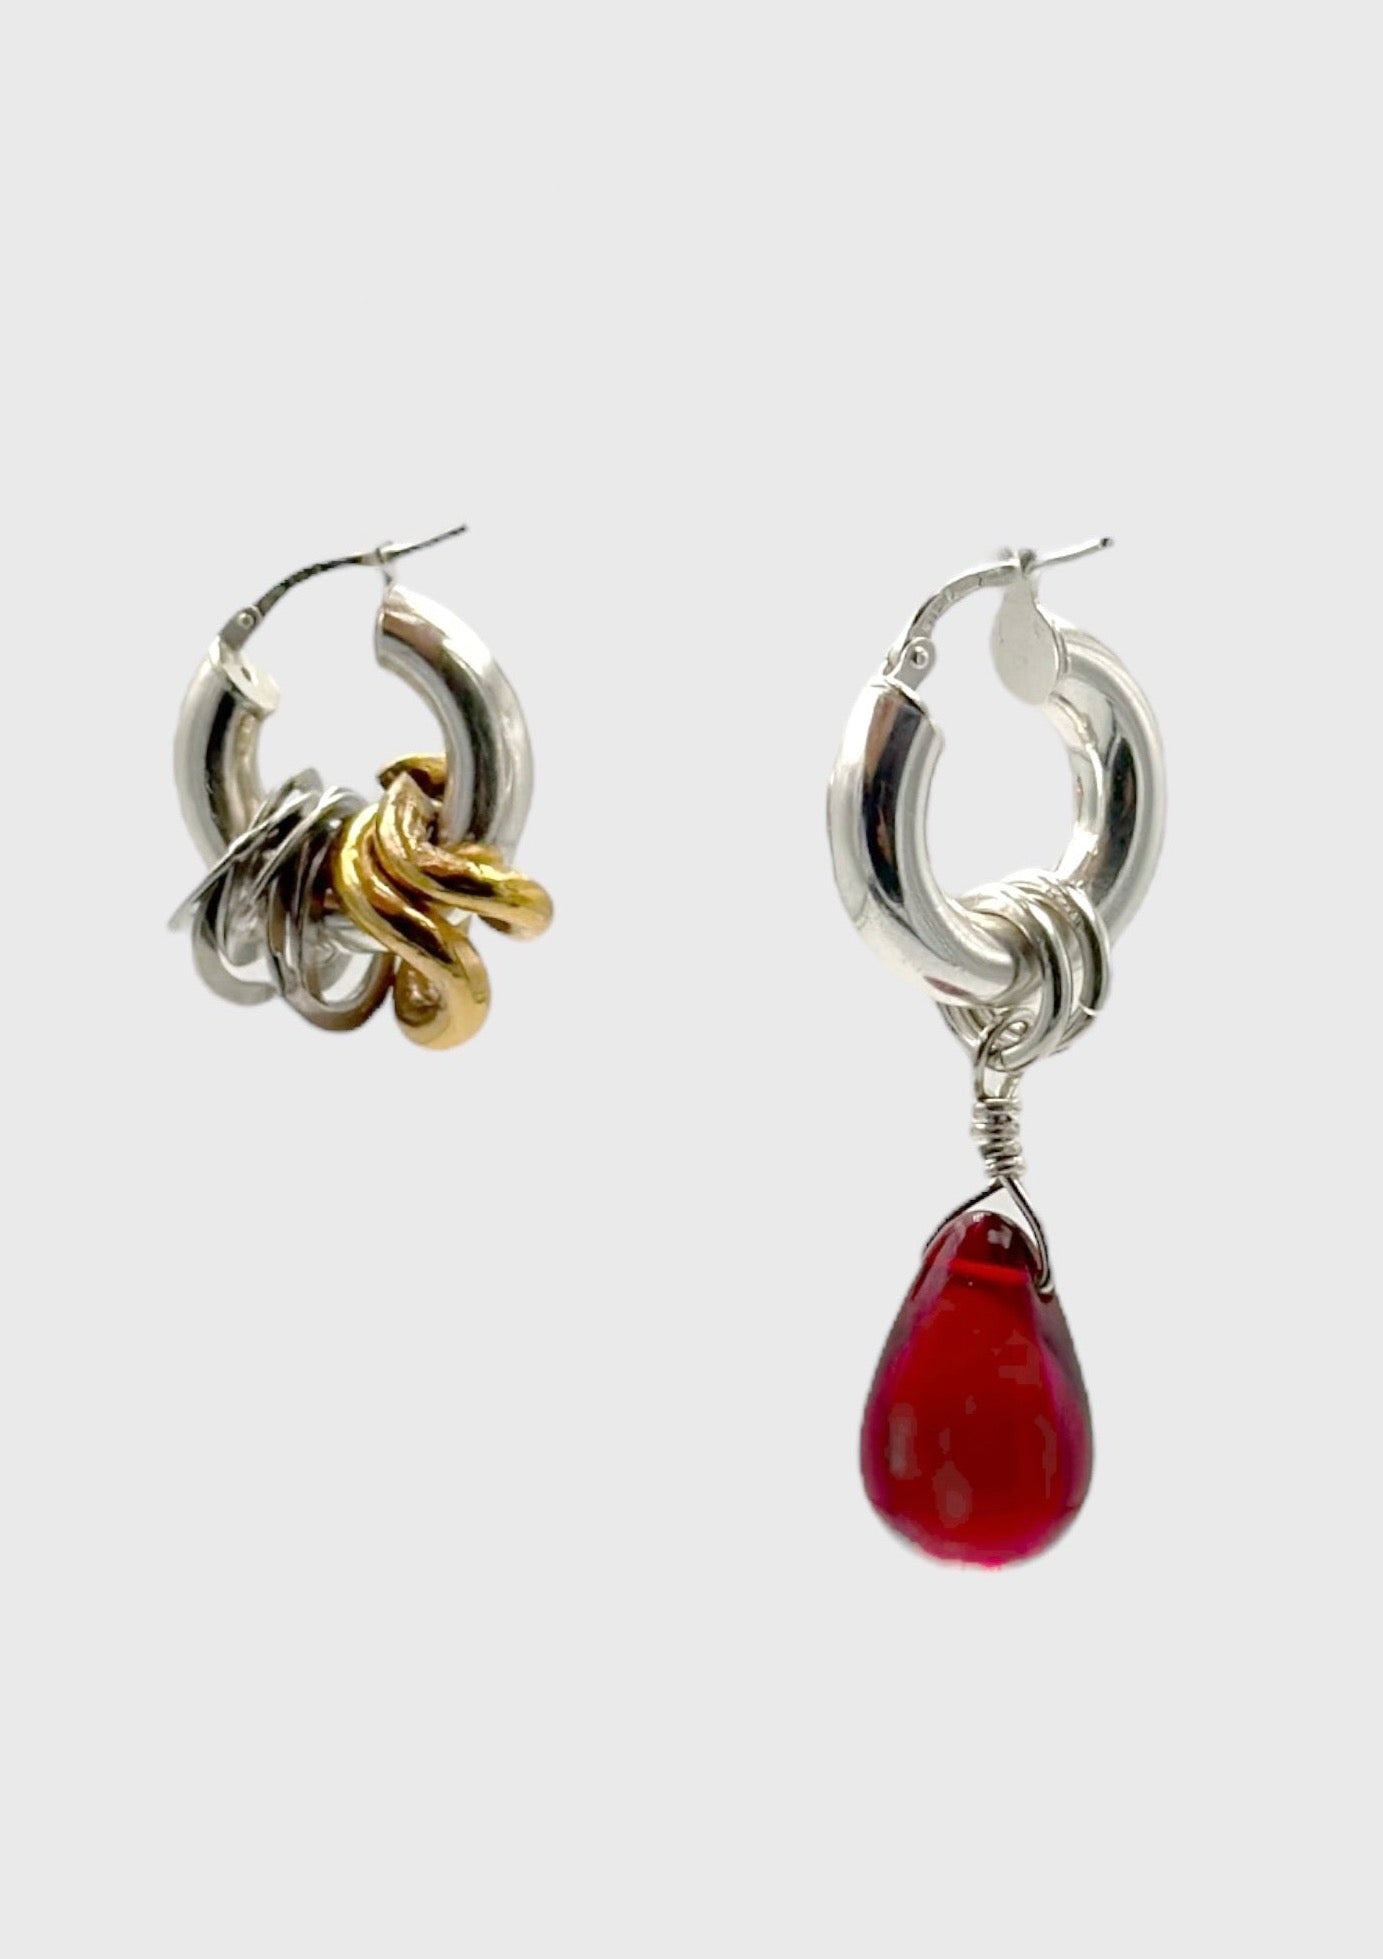 Boucle d'oreille - argent massif et plaqué or ancien, perle de verre rouge